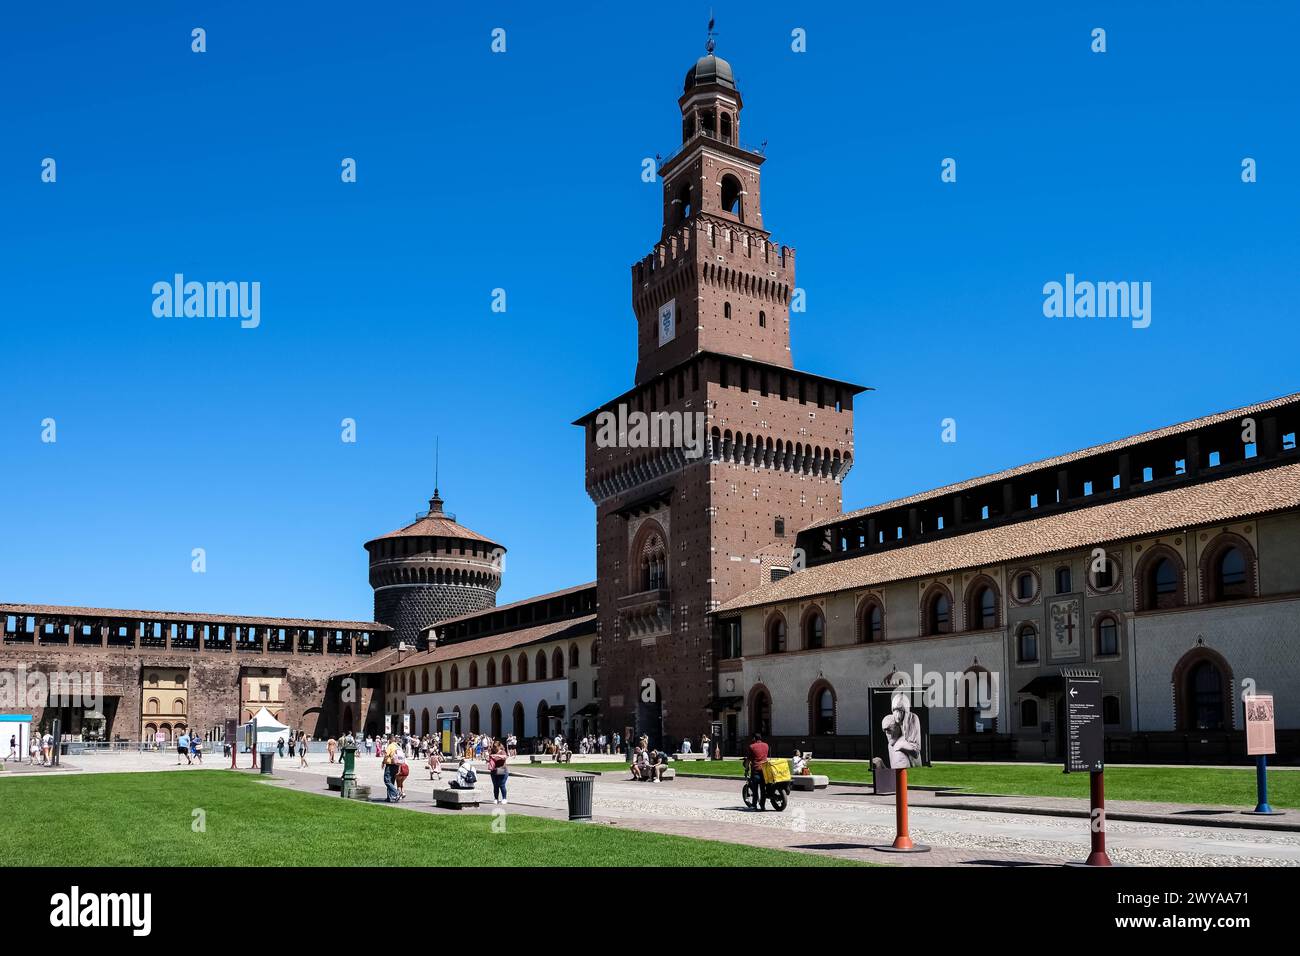 Vue du château des Sforza, fortification médiévale datant du XVe siècle, abritant aujourd'hui des musées et des collections d'art, Milan, Banque D'Images